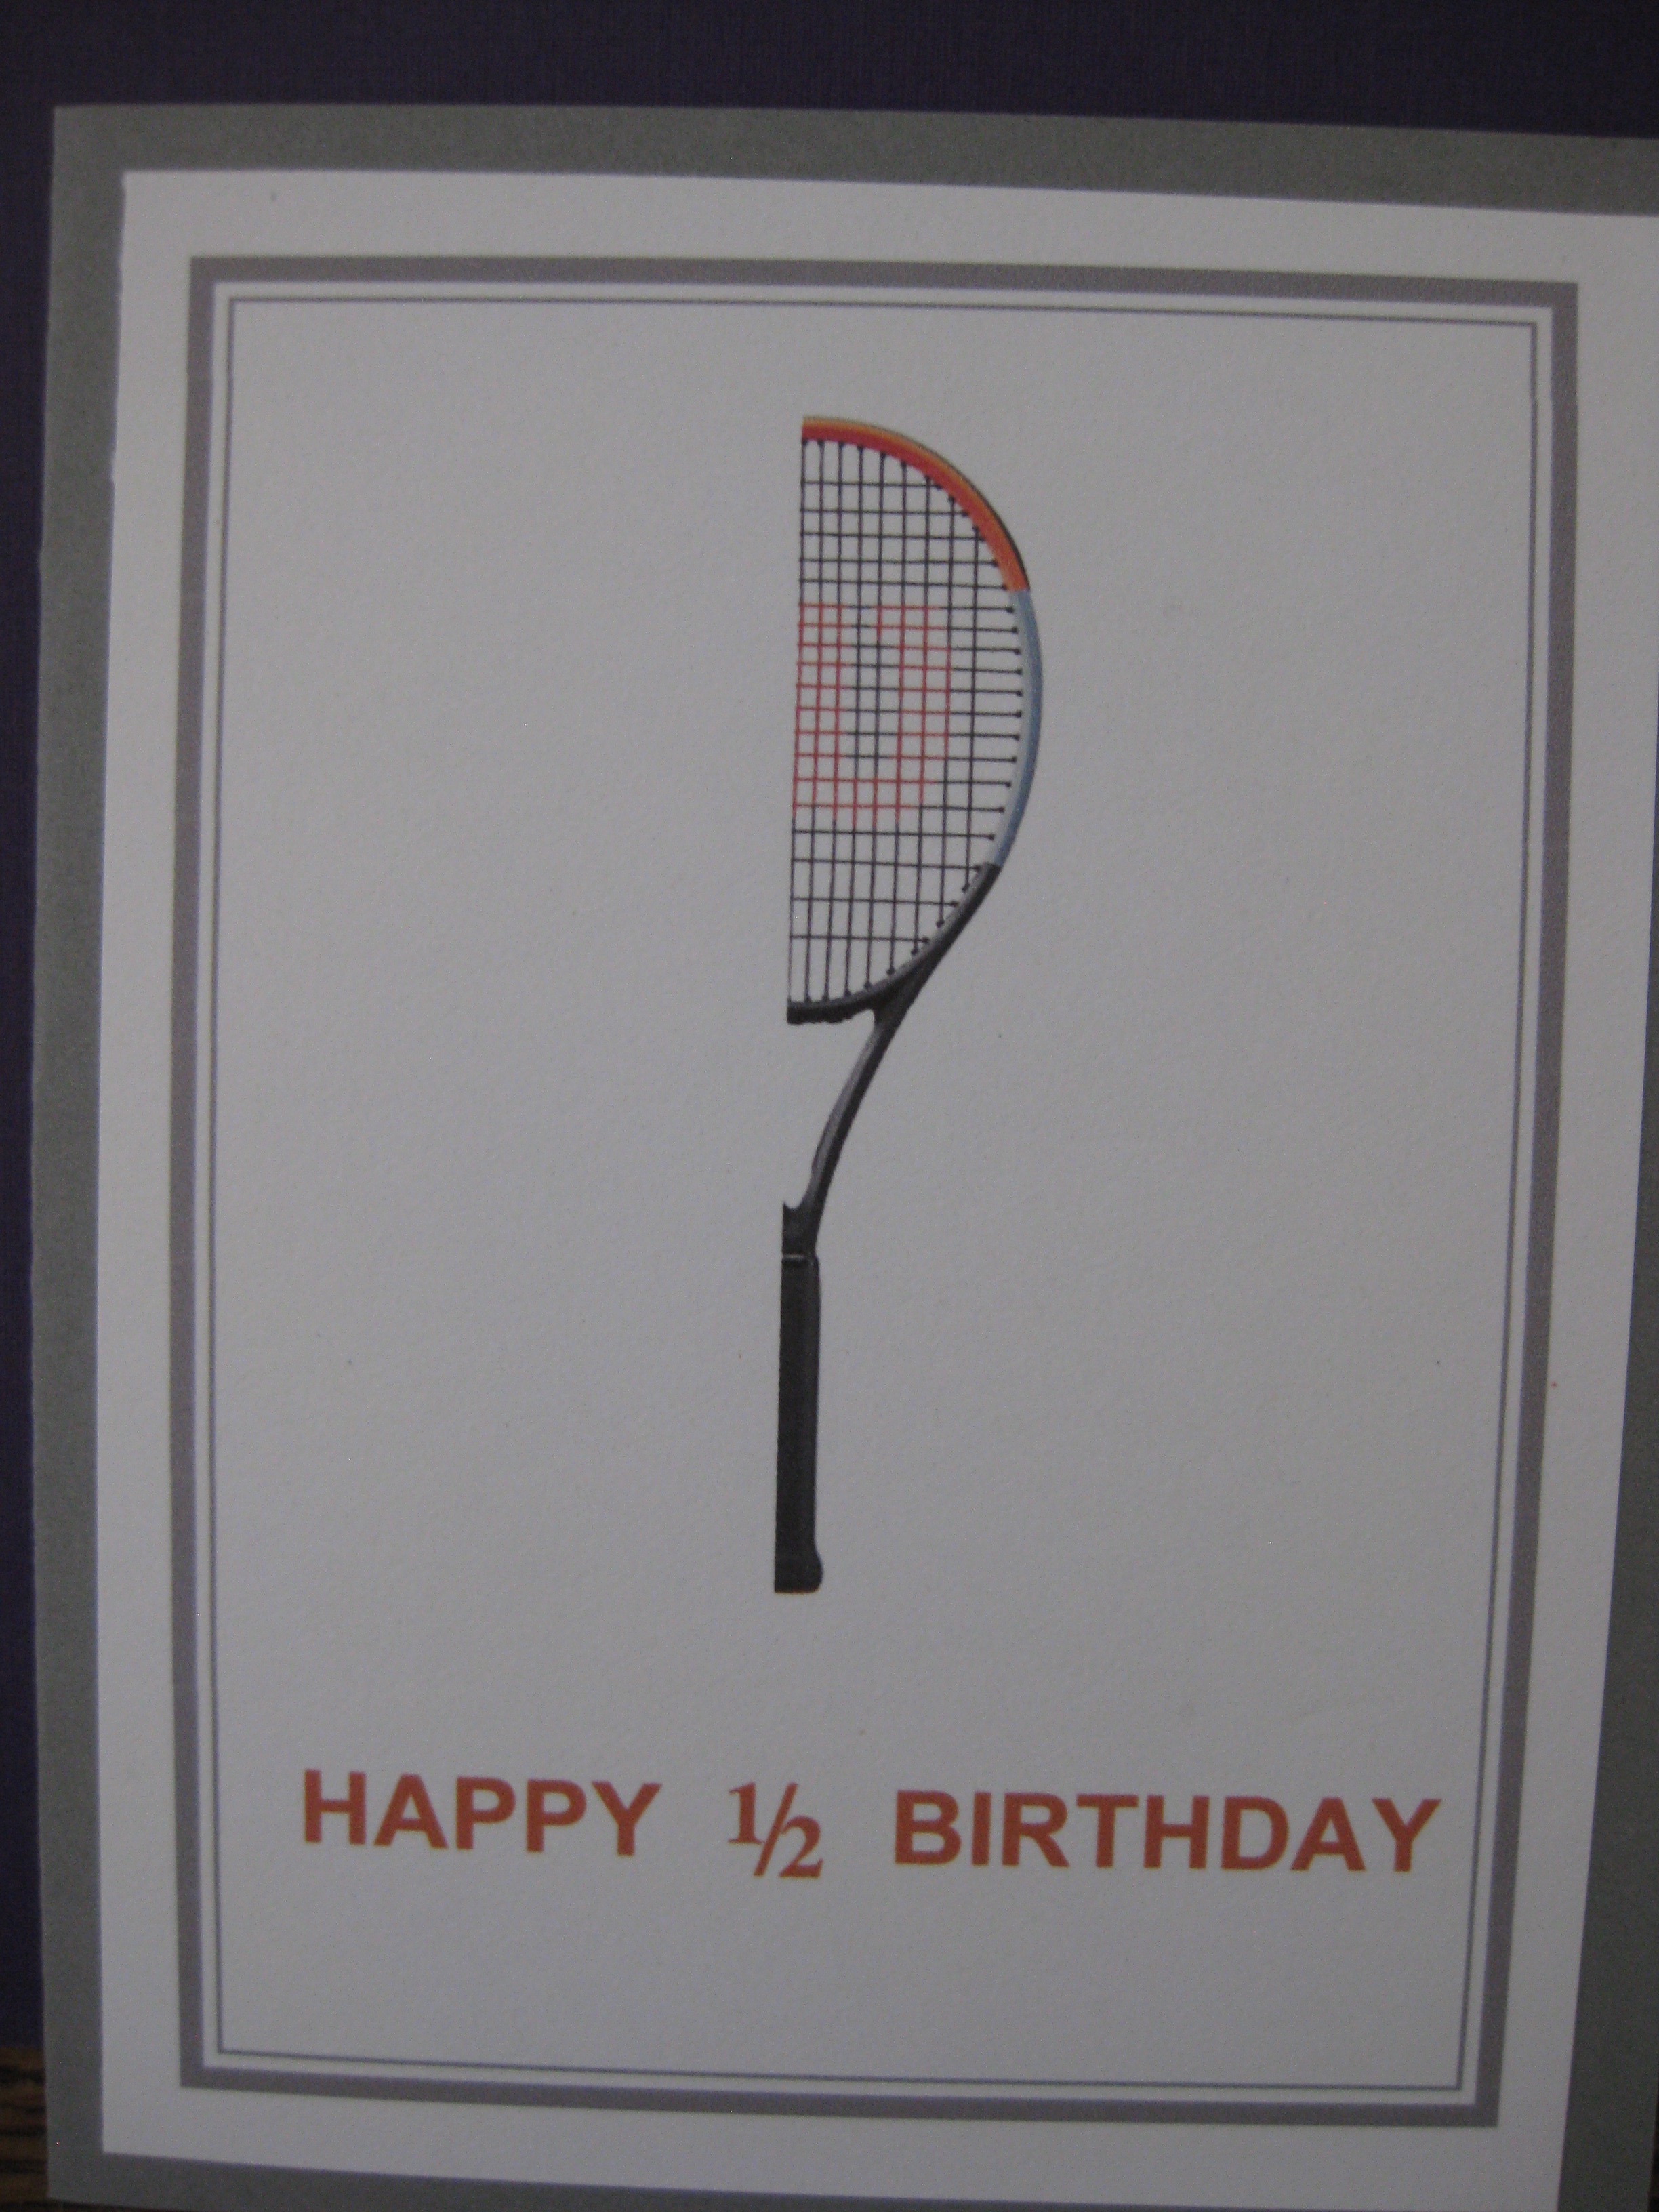 1/2 birthday/tennis